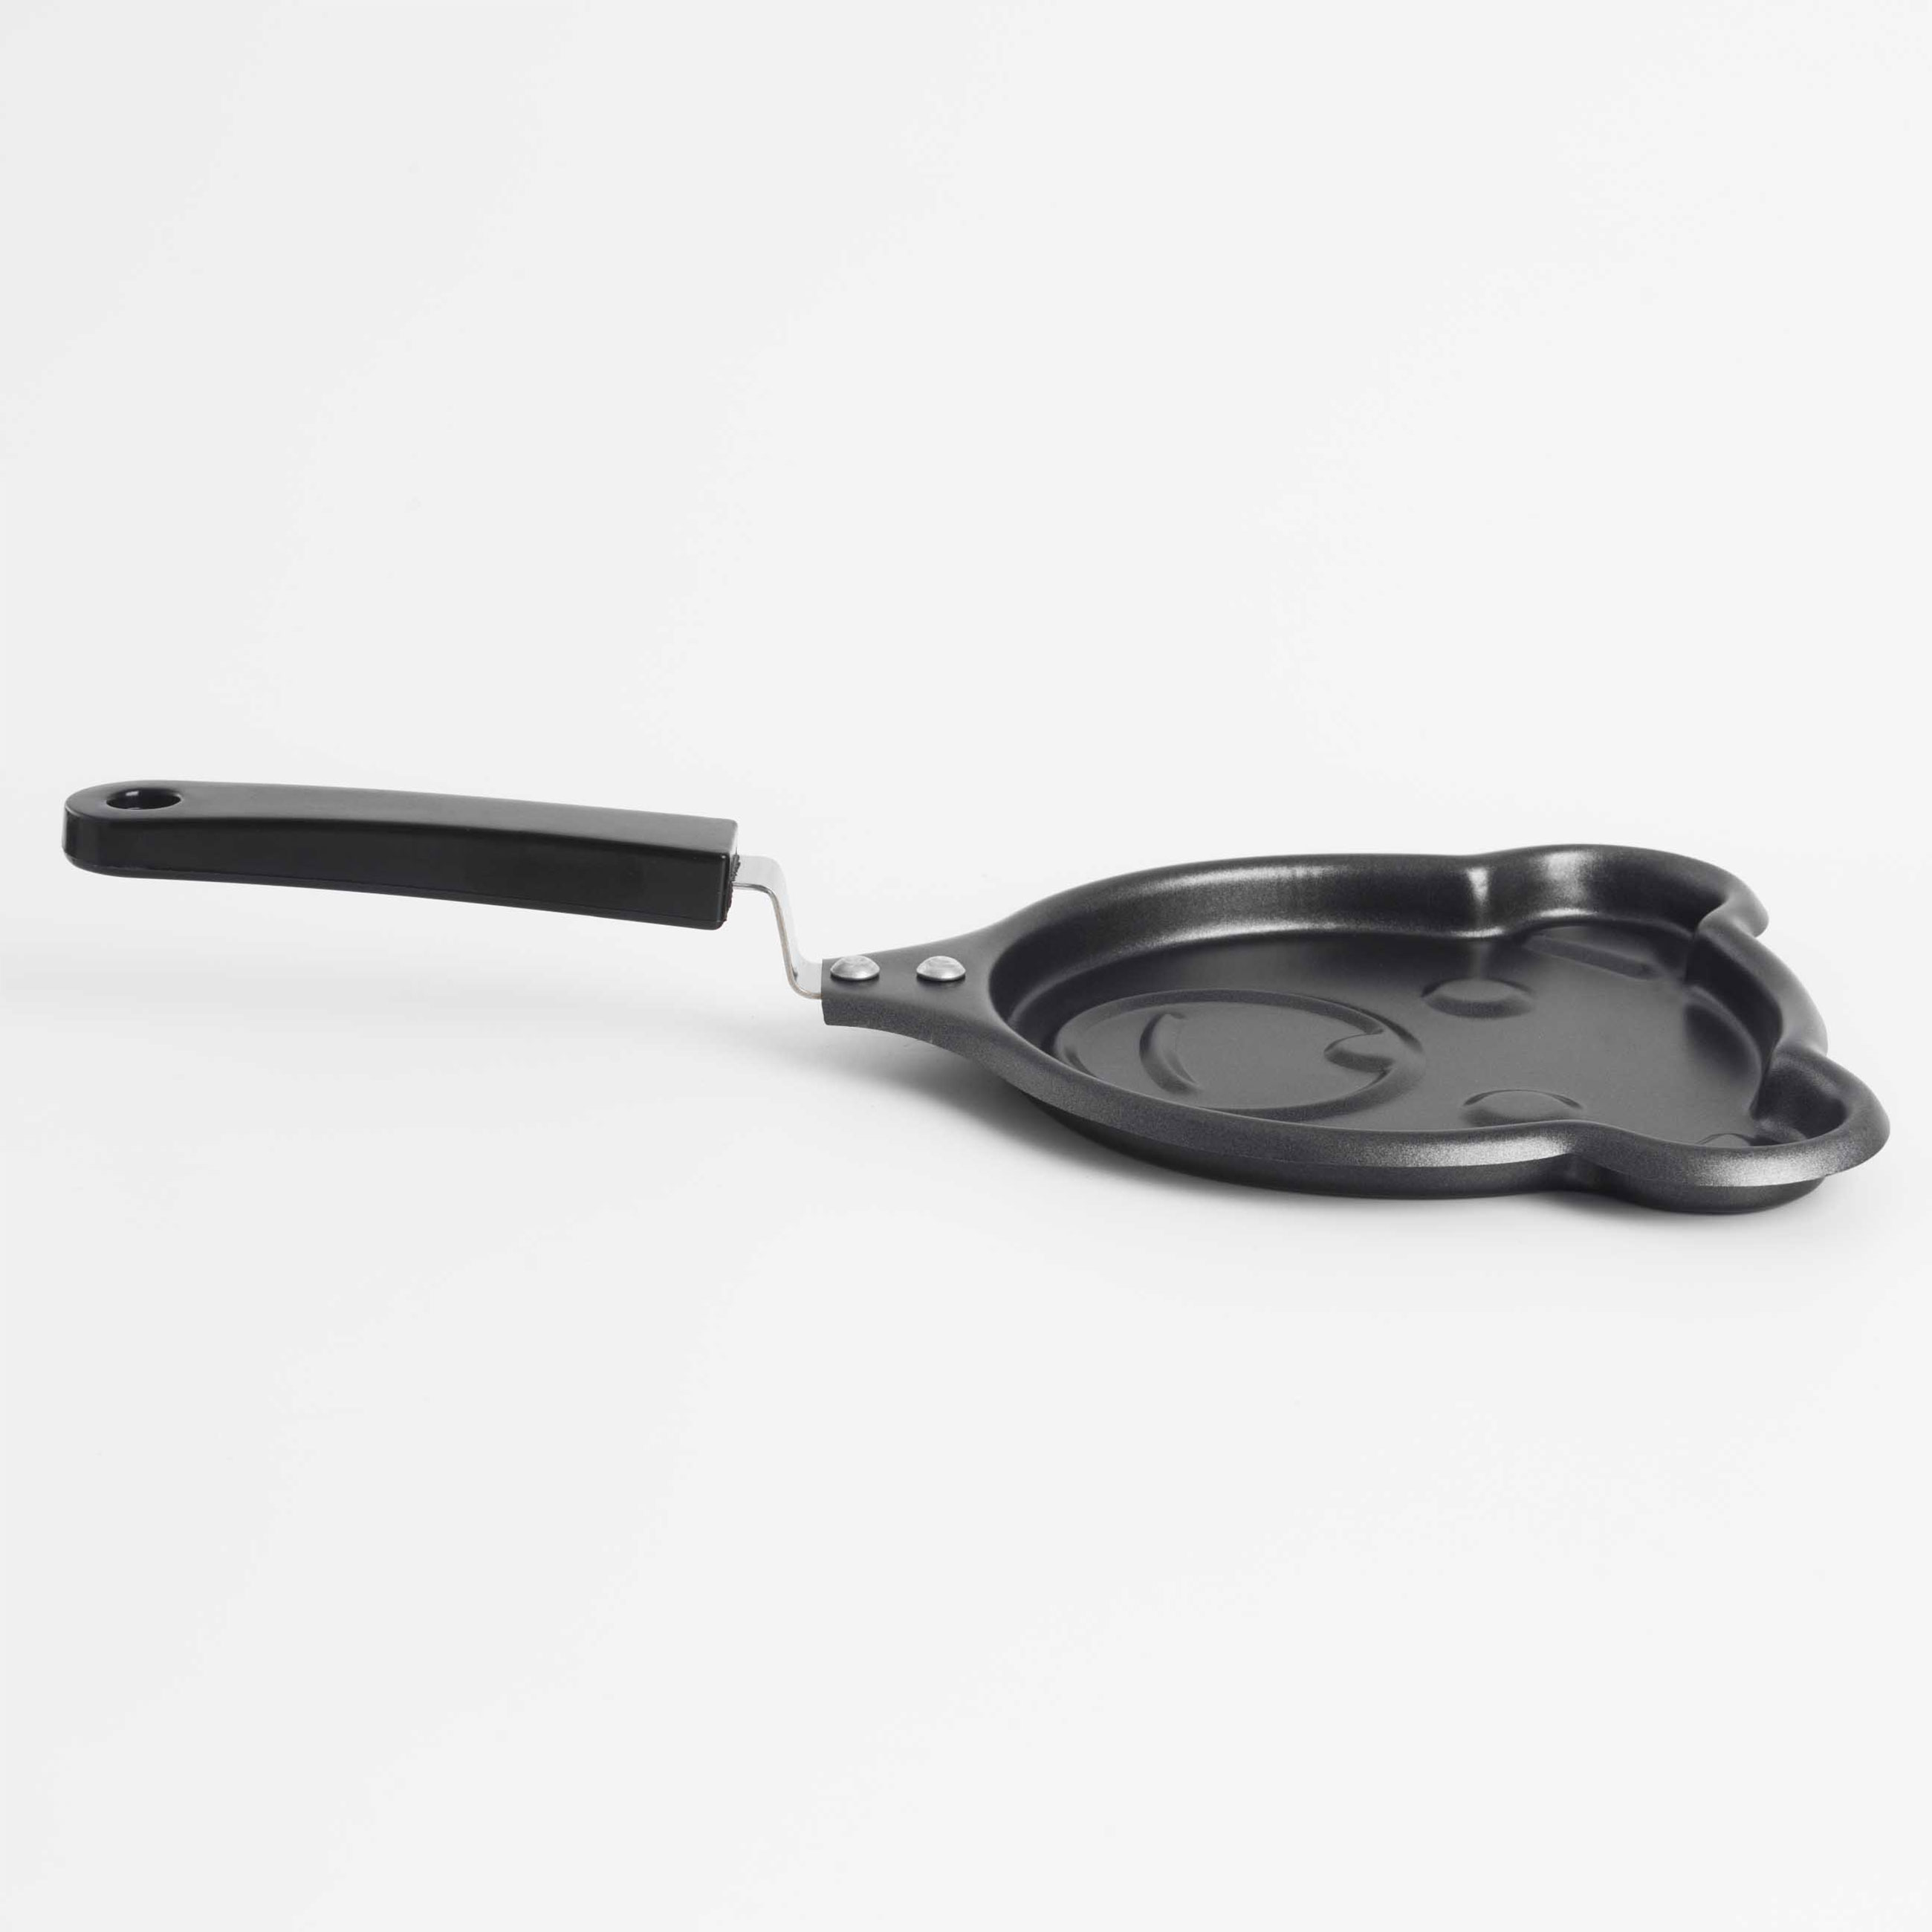 Сковорода для омлета и панкейков, 13 см, с покрытием, сталь, черная, Мишка, Bear изображение № 3